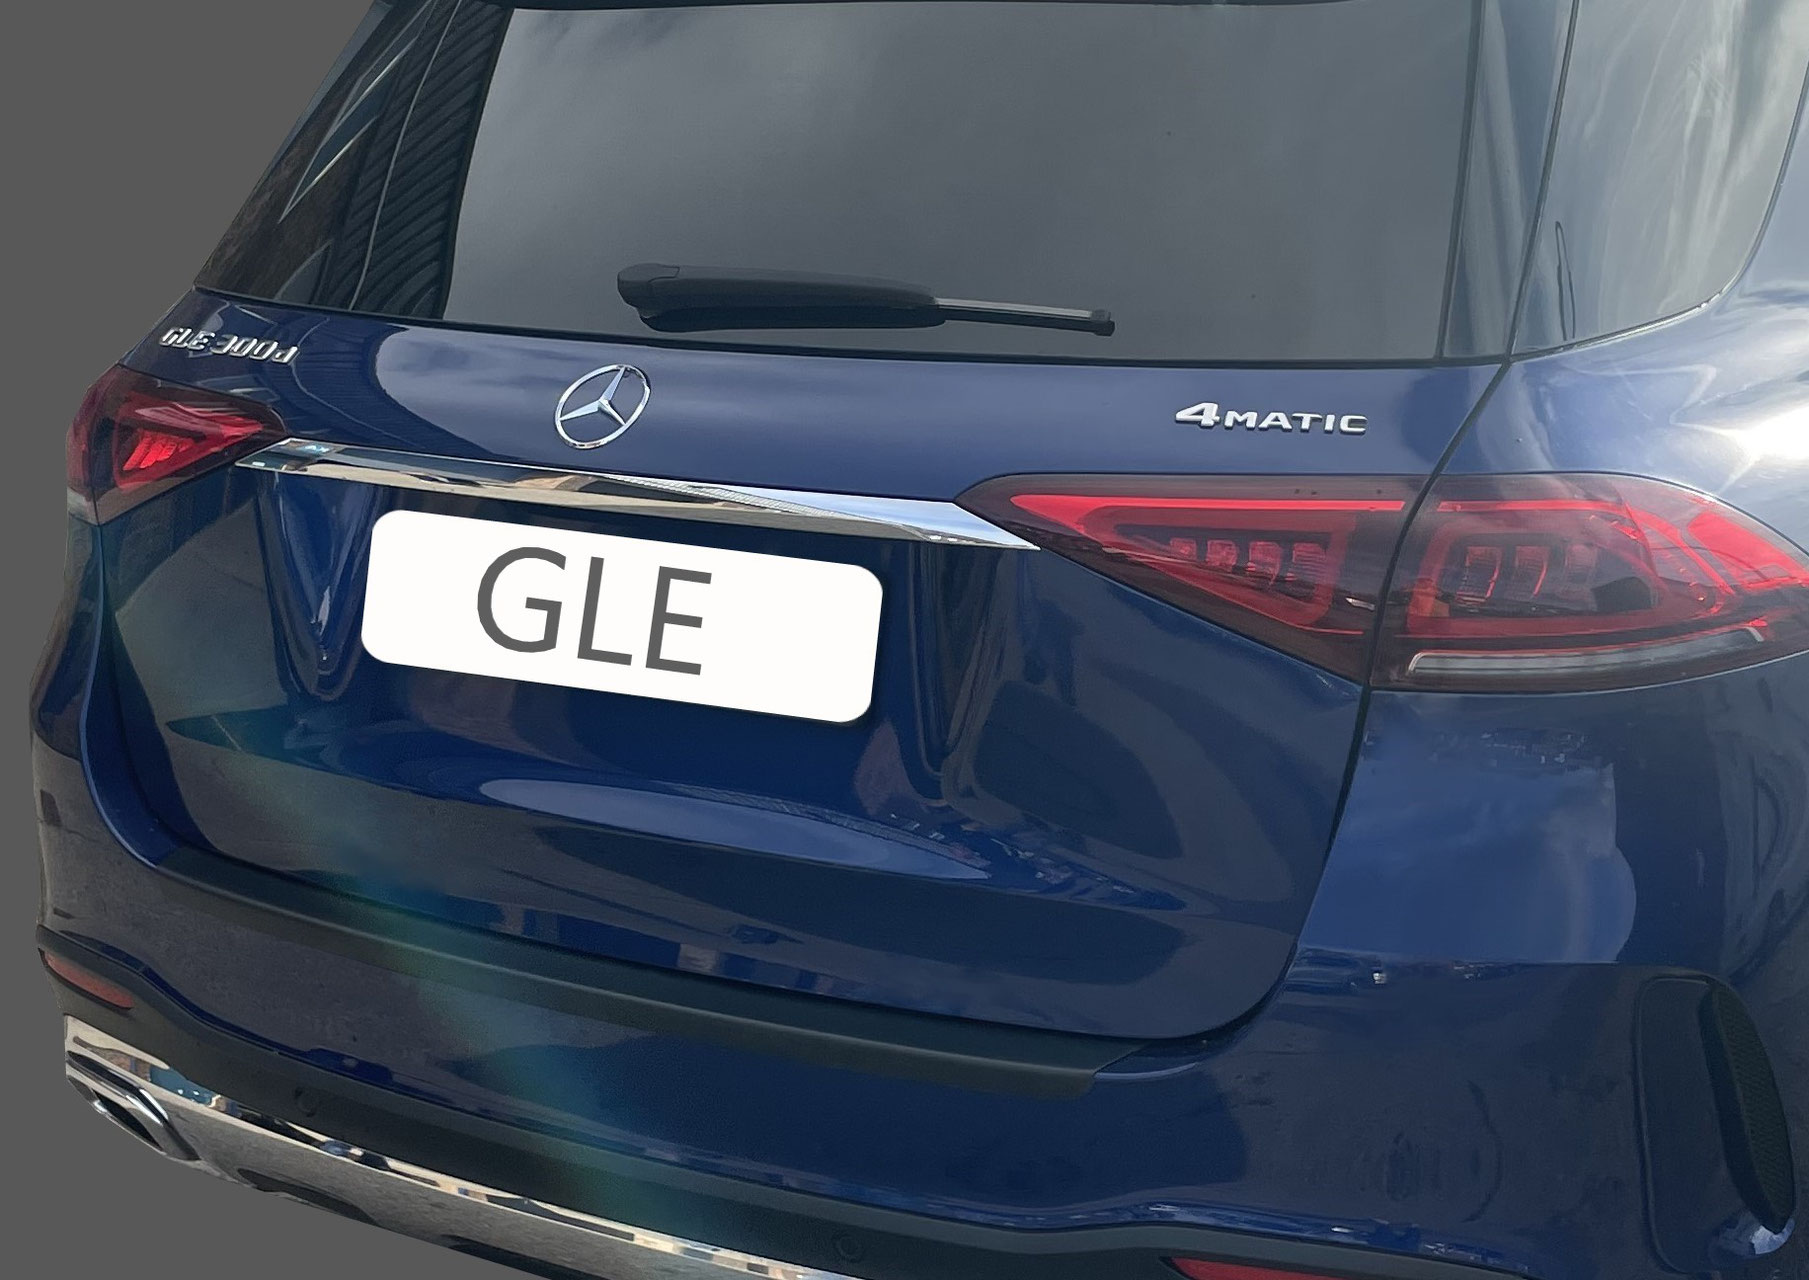 Ladekantenschutz für MERCEDES GLE - Schutz für die Ladekante Ihres  Fahrzeuges